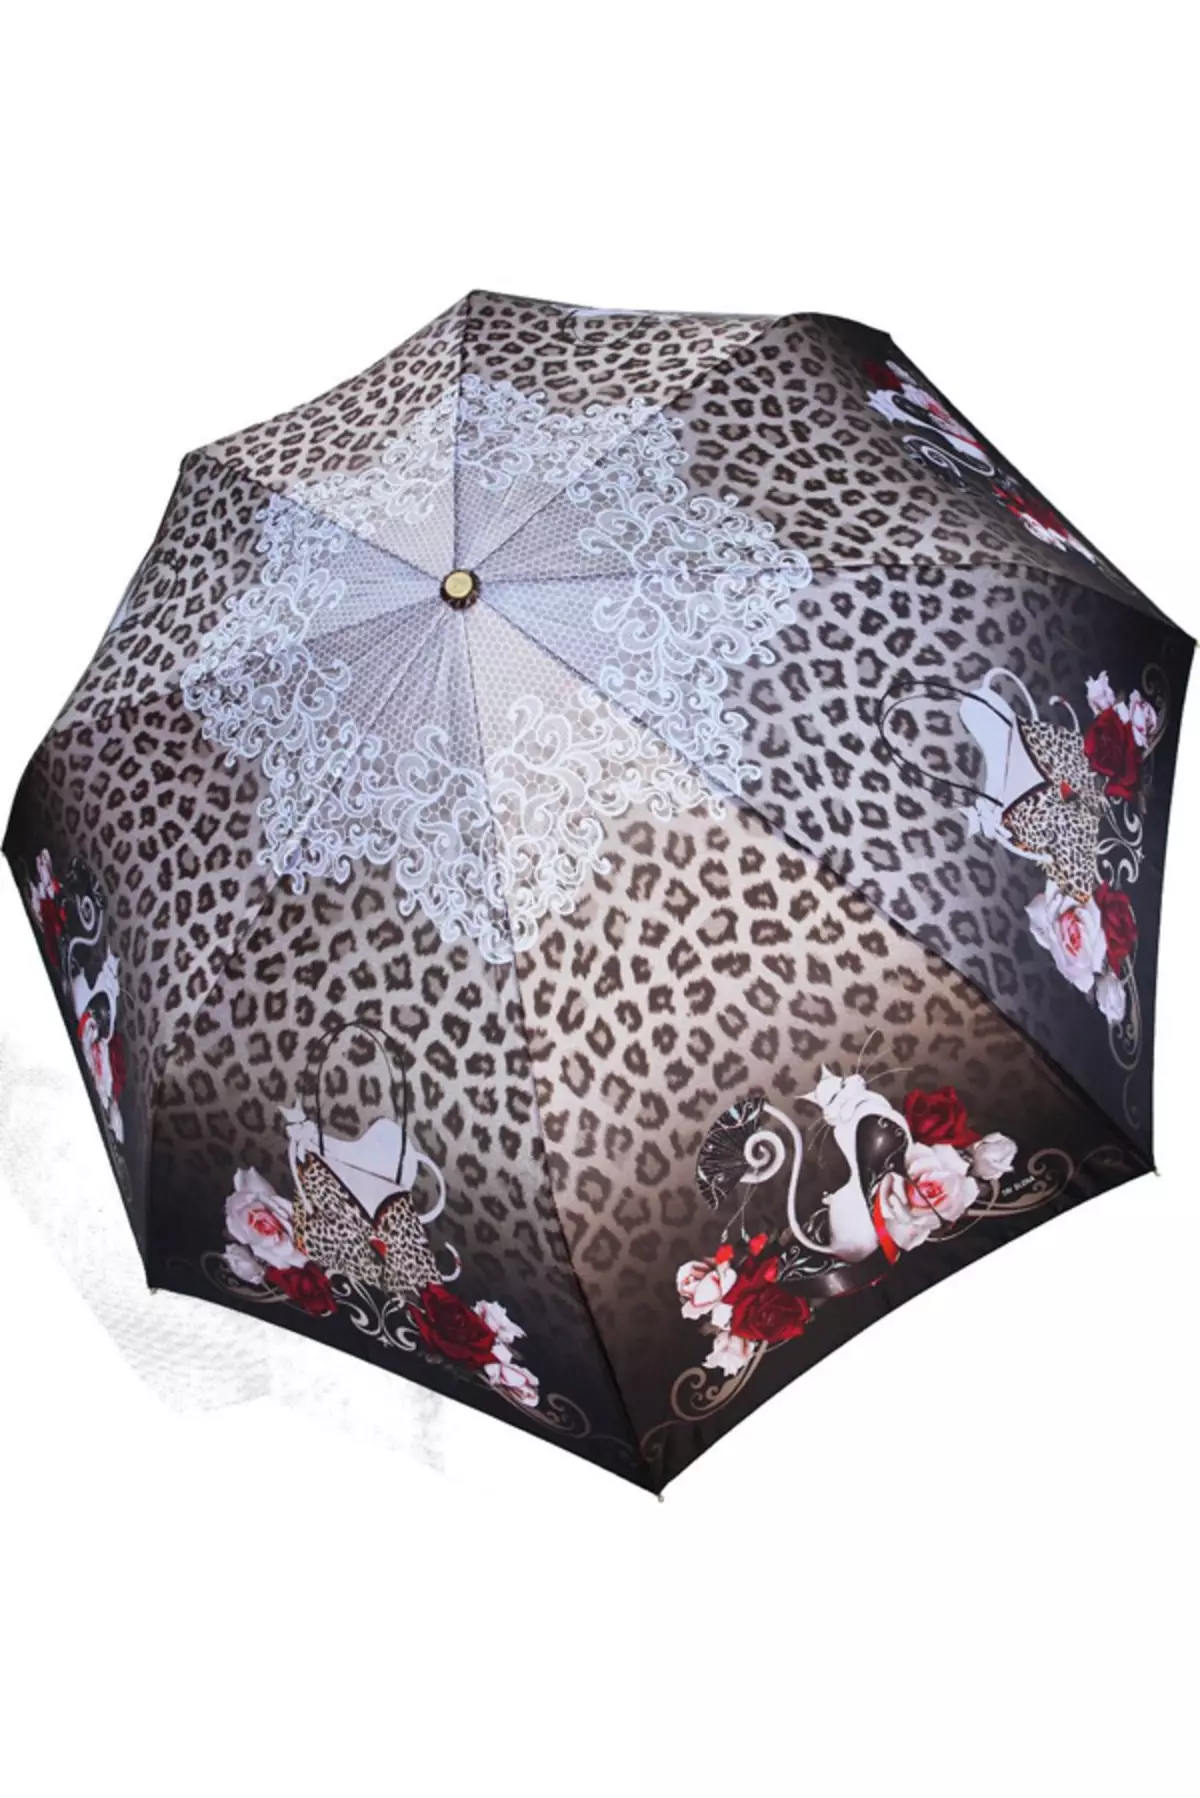 Sun Umbrella (72 fotos): Female Lace Openwork Umbrella-Cast 15238_53